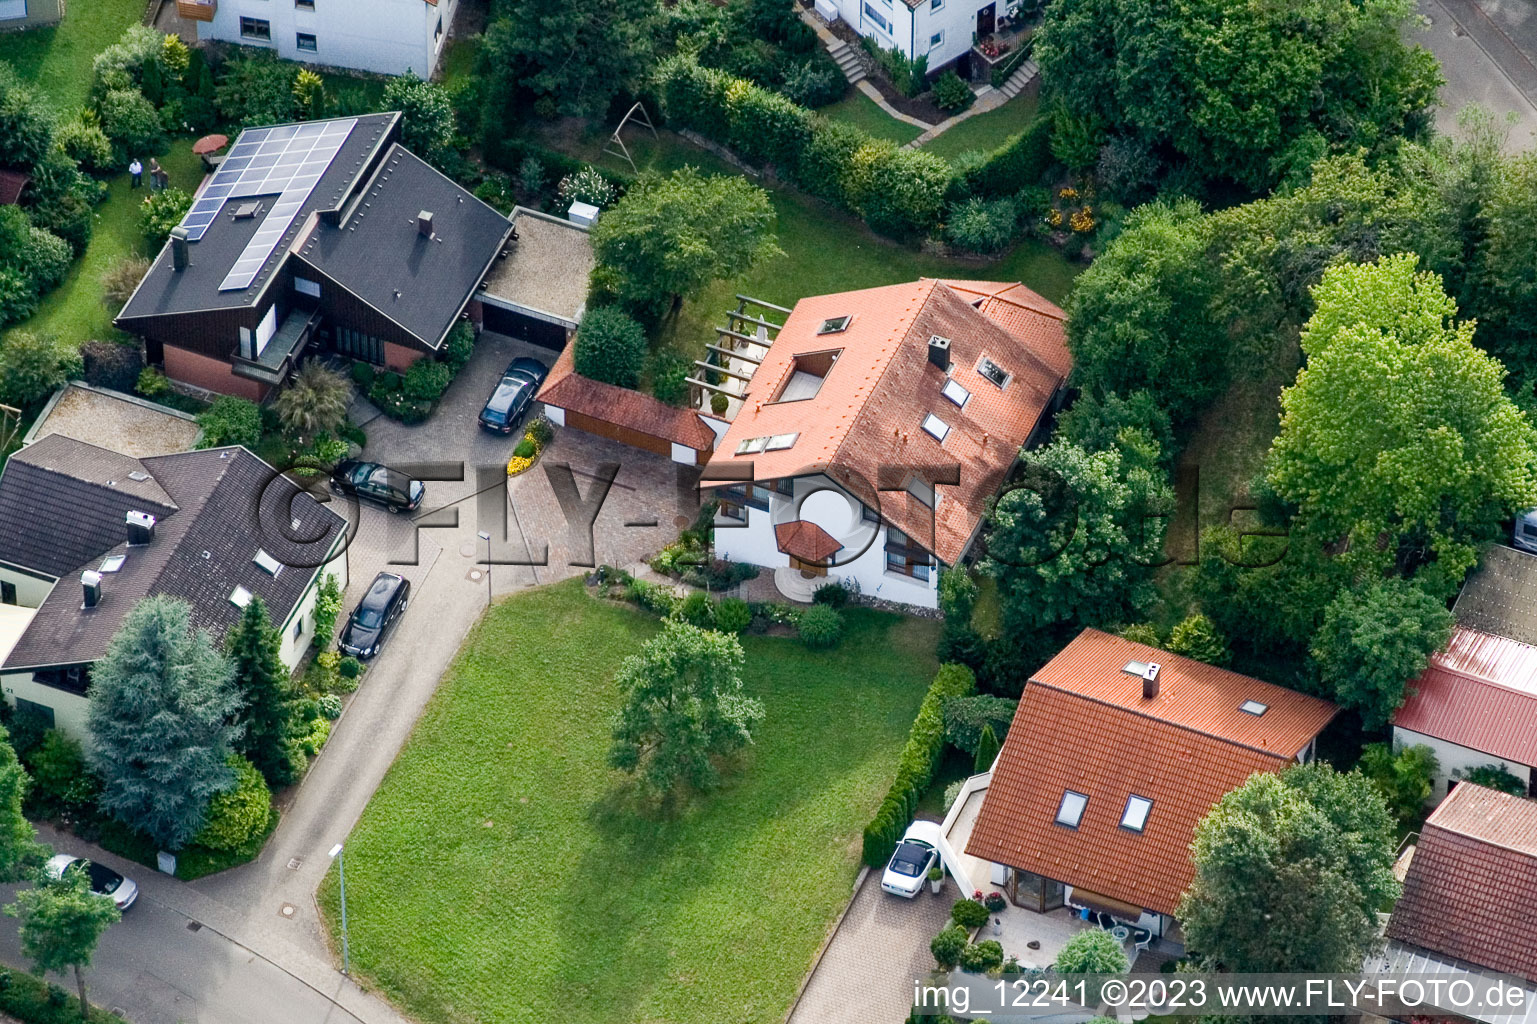 Ehbühl, Kirchhalde in Herrenberg im Bundesland Baden-Württemberg, Deutschland von der Drohne aus gesehen